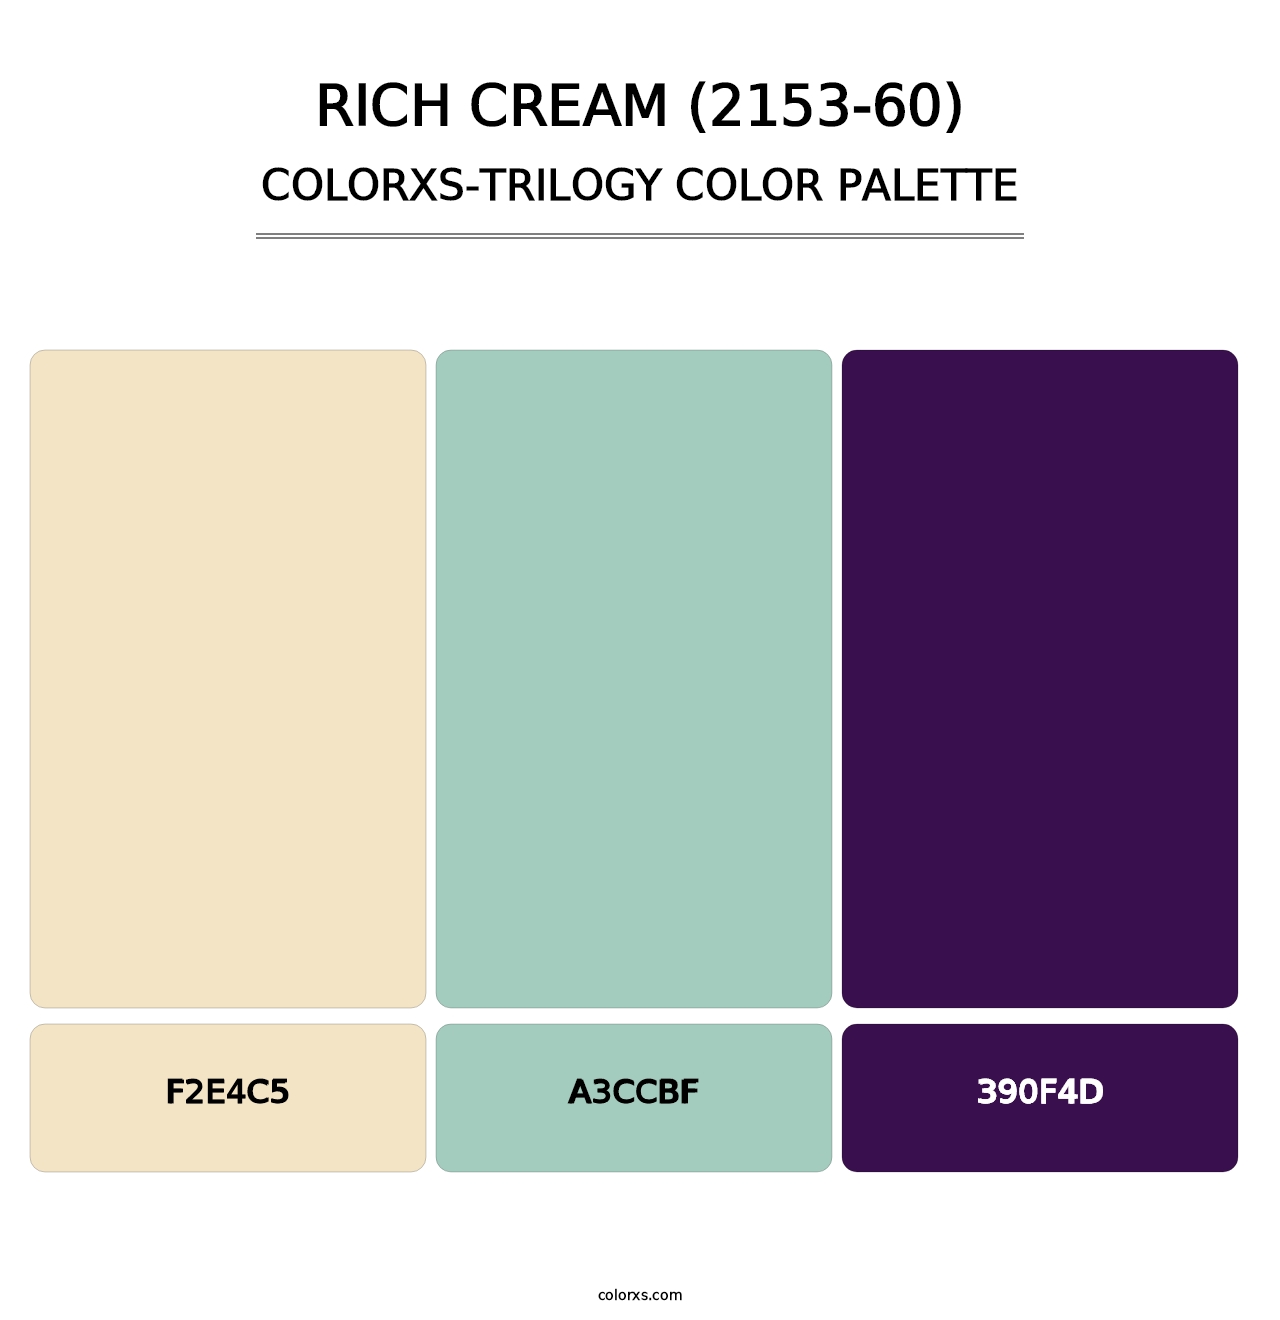 Rich Cream (2153-60) - Colorxs Trilogy Palette